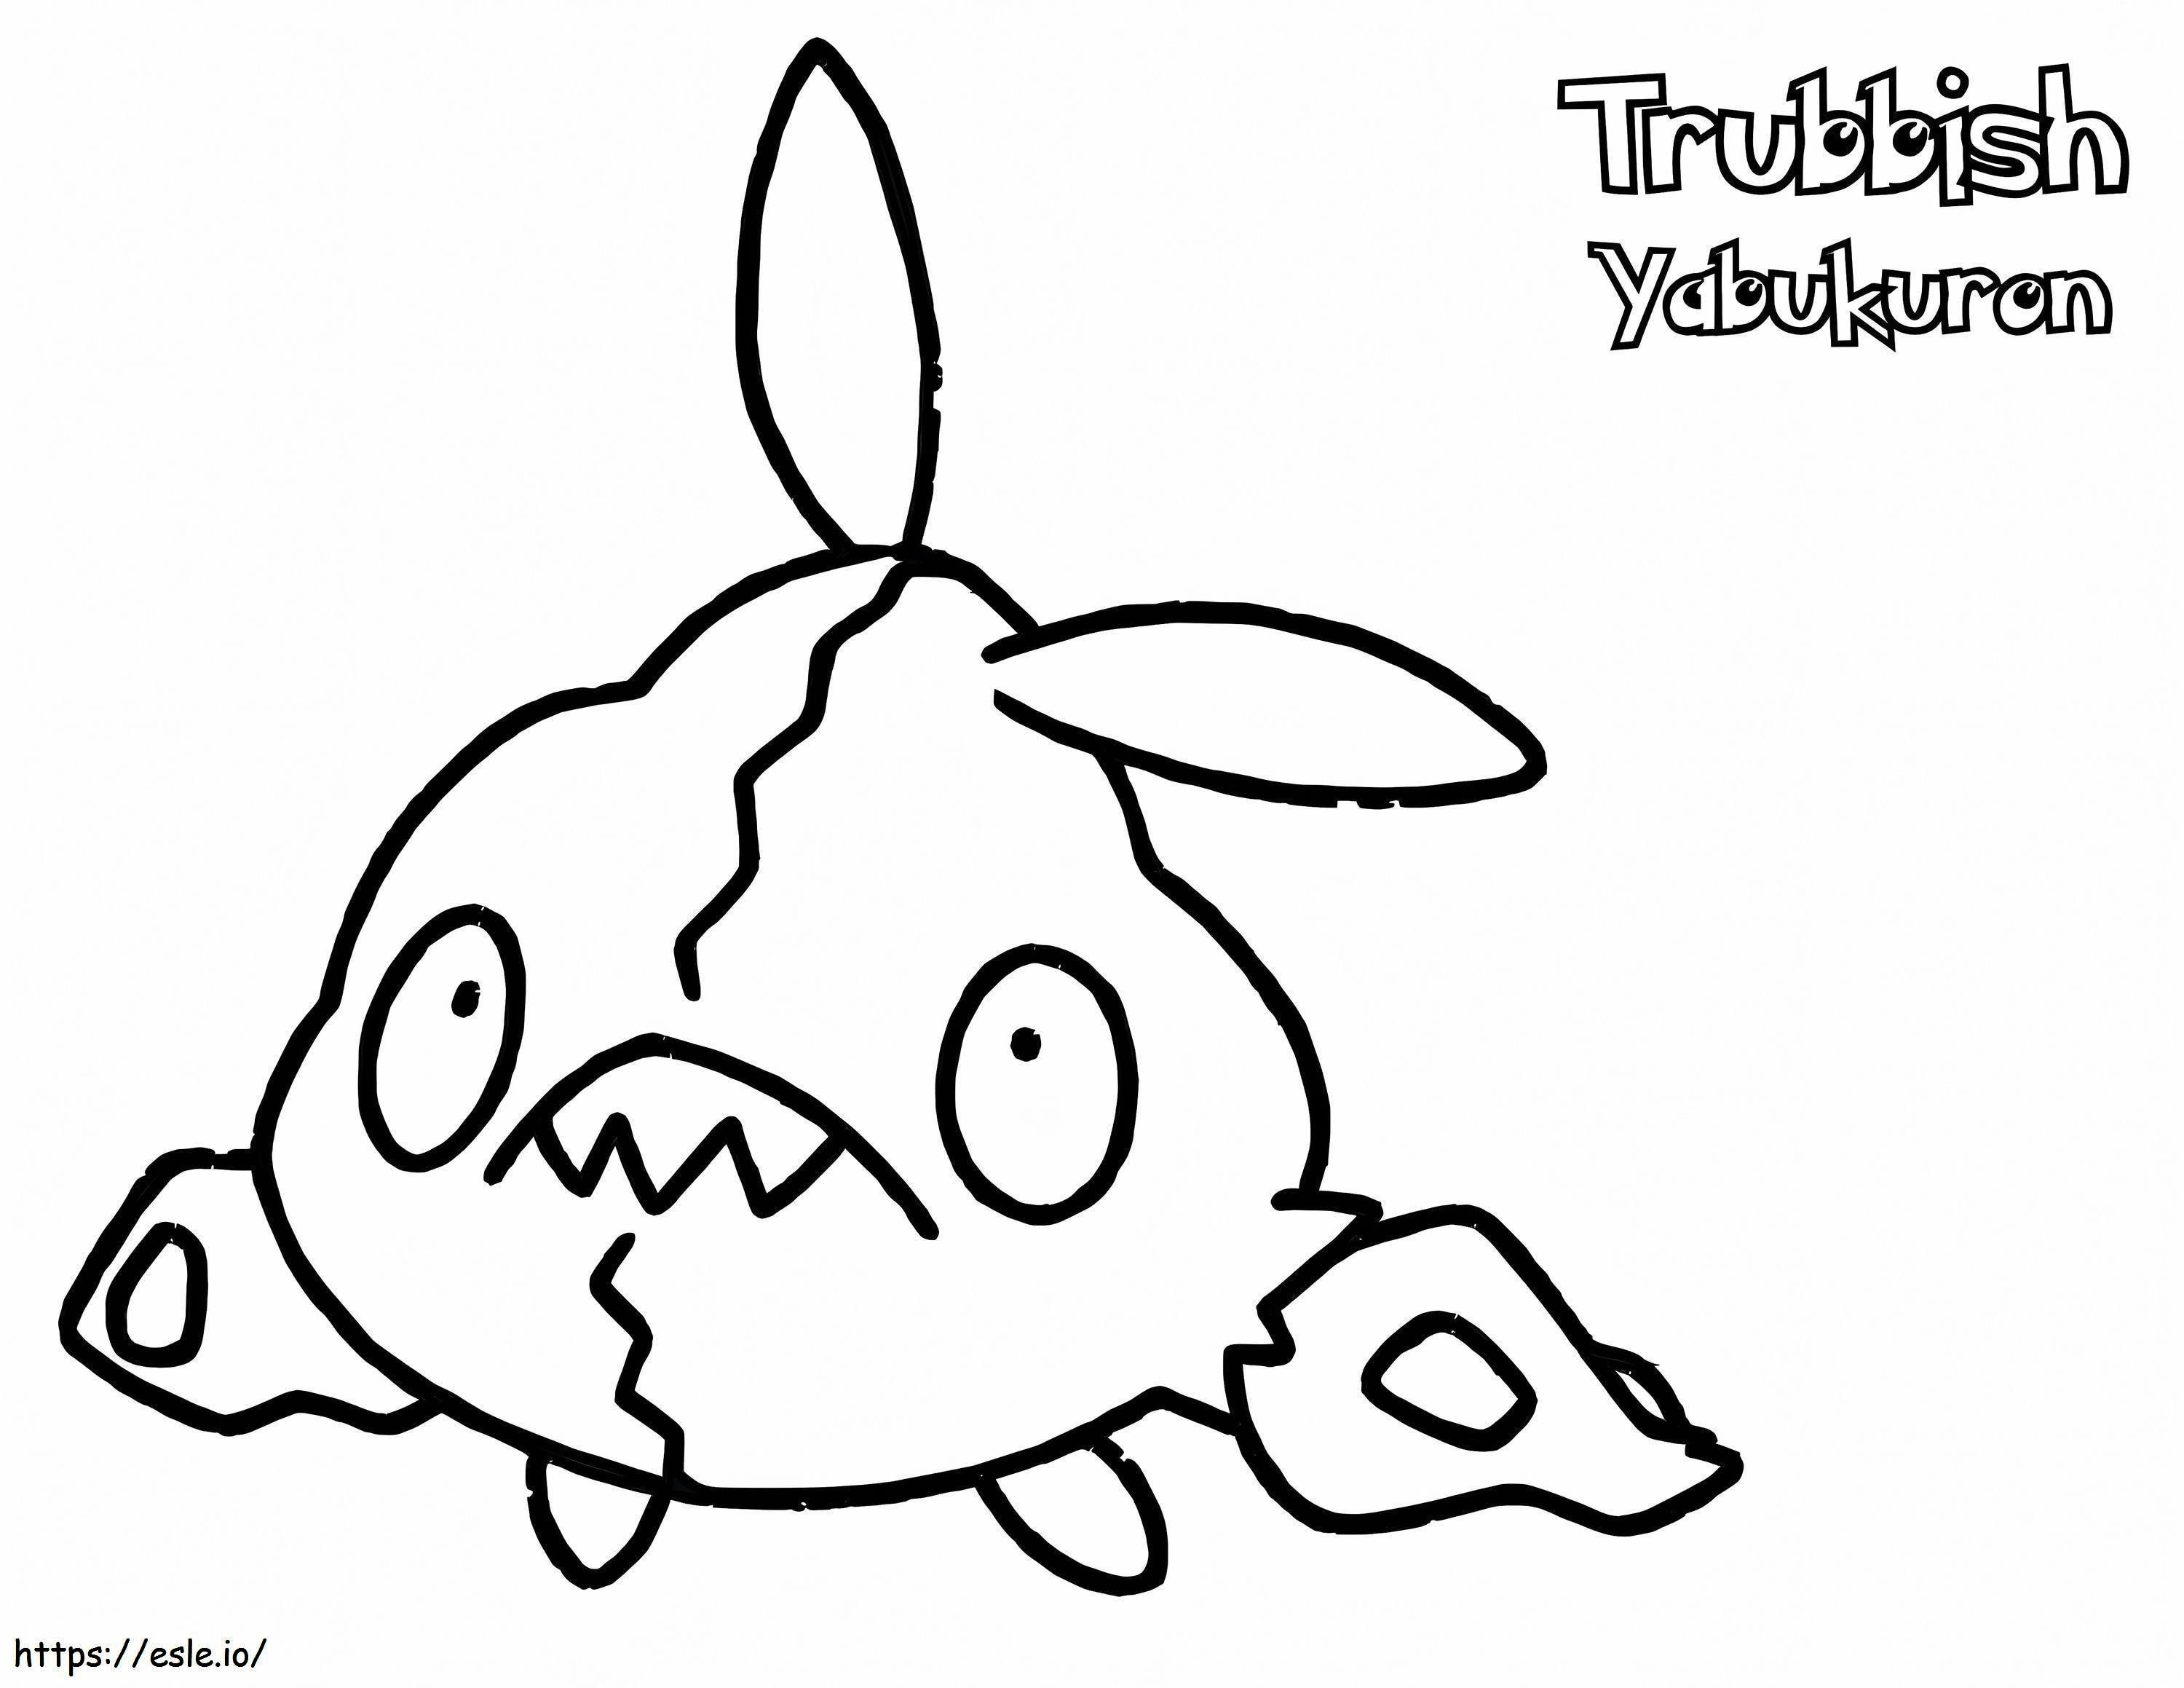 Coloriage Pokémon Trubbish Gen 5 à imprimer dessin